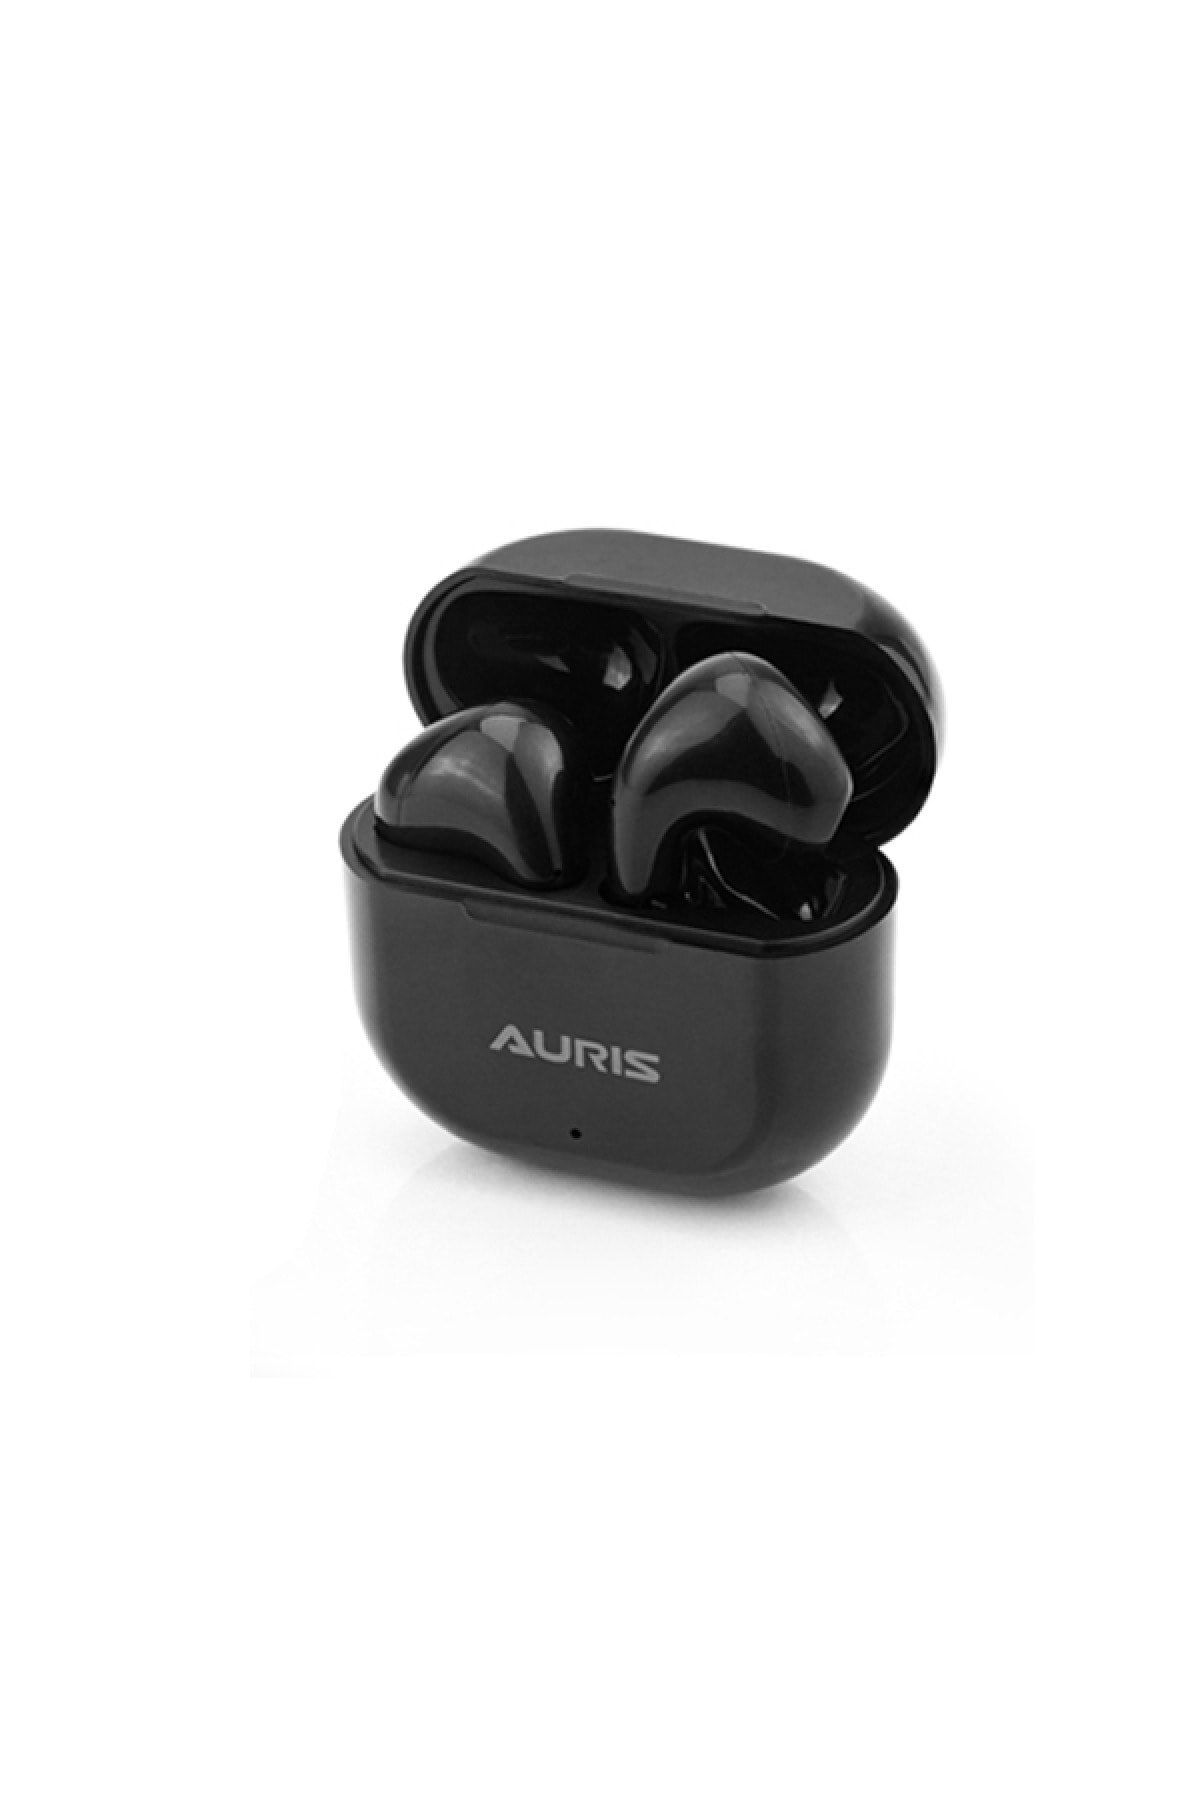 Auris Dokunmatik Bluetooth Kulakiçi Kulaklık  Ars-tw03 Uyumlu